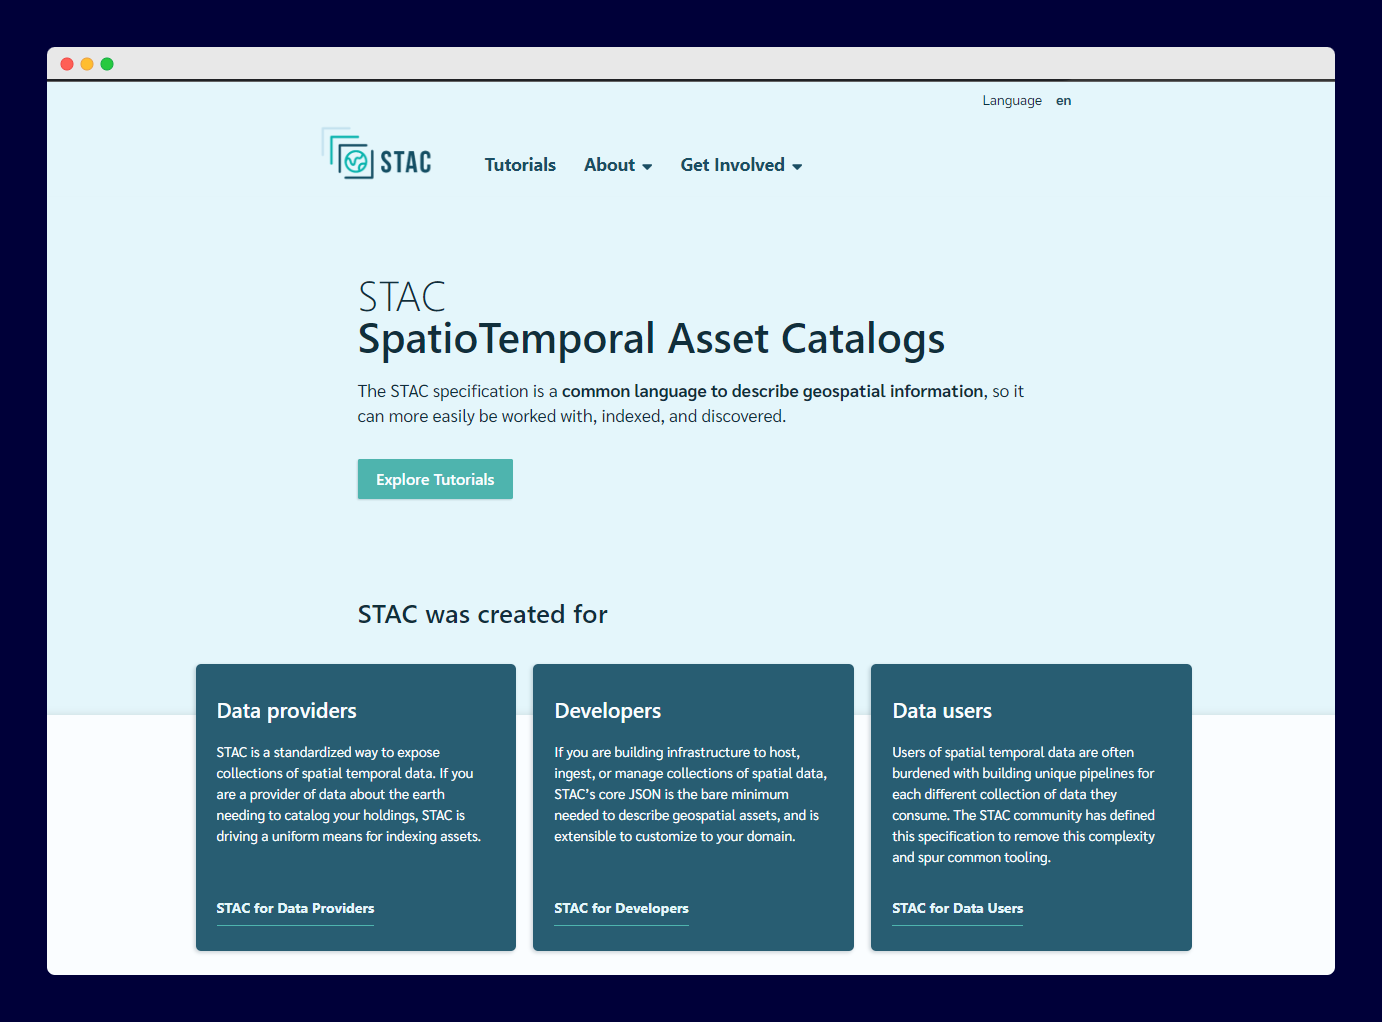 The Official STAC Spec website